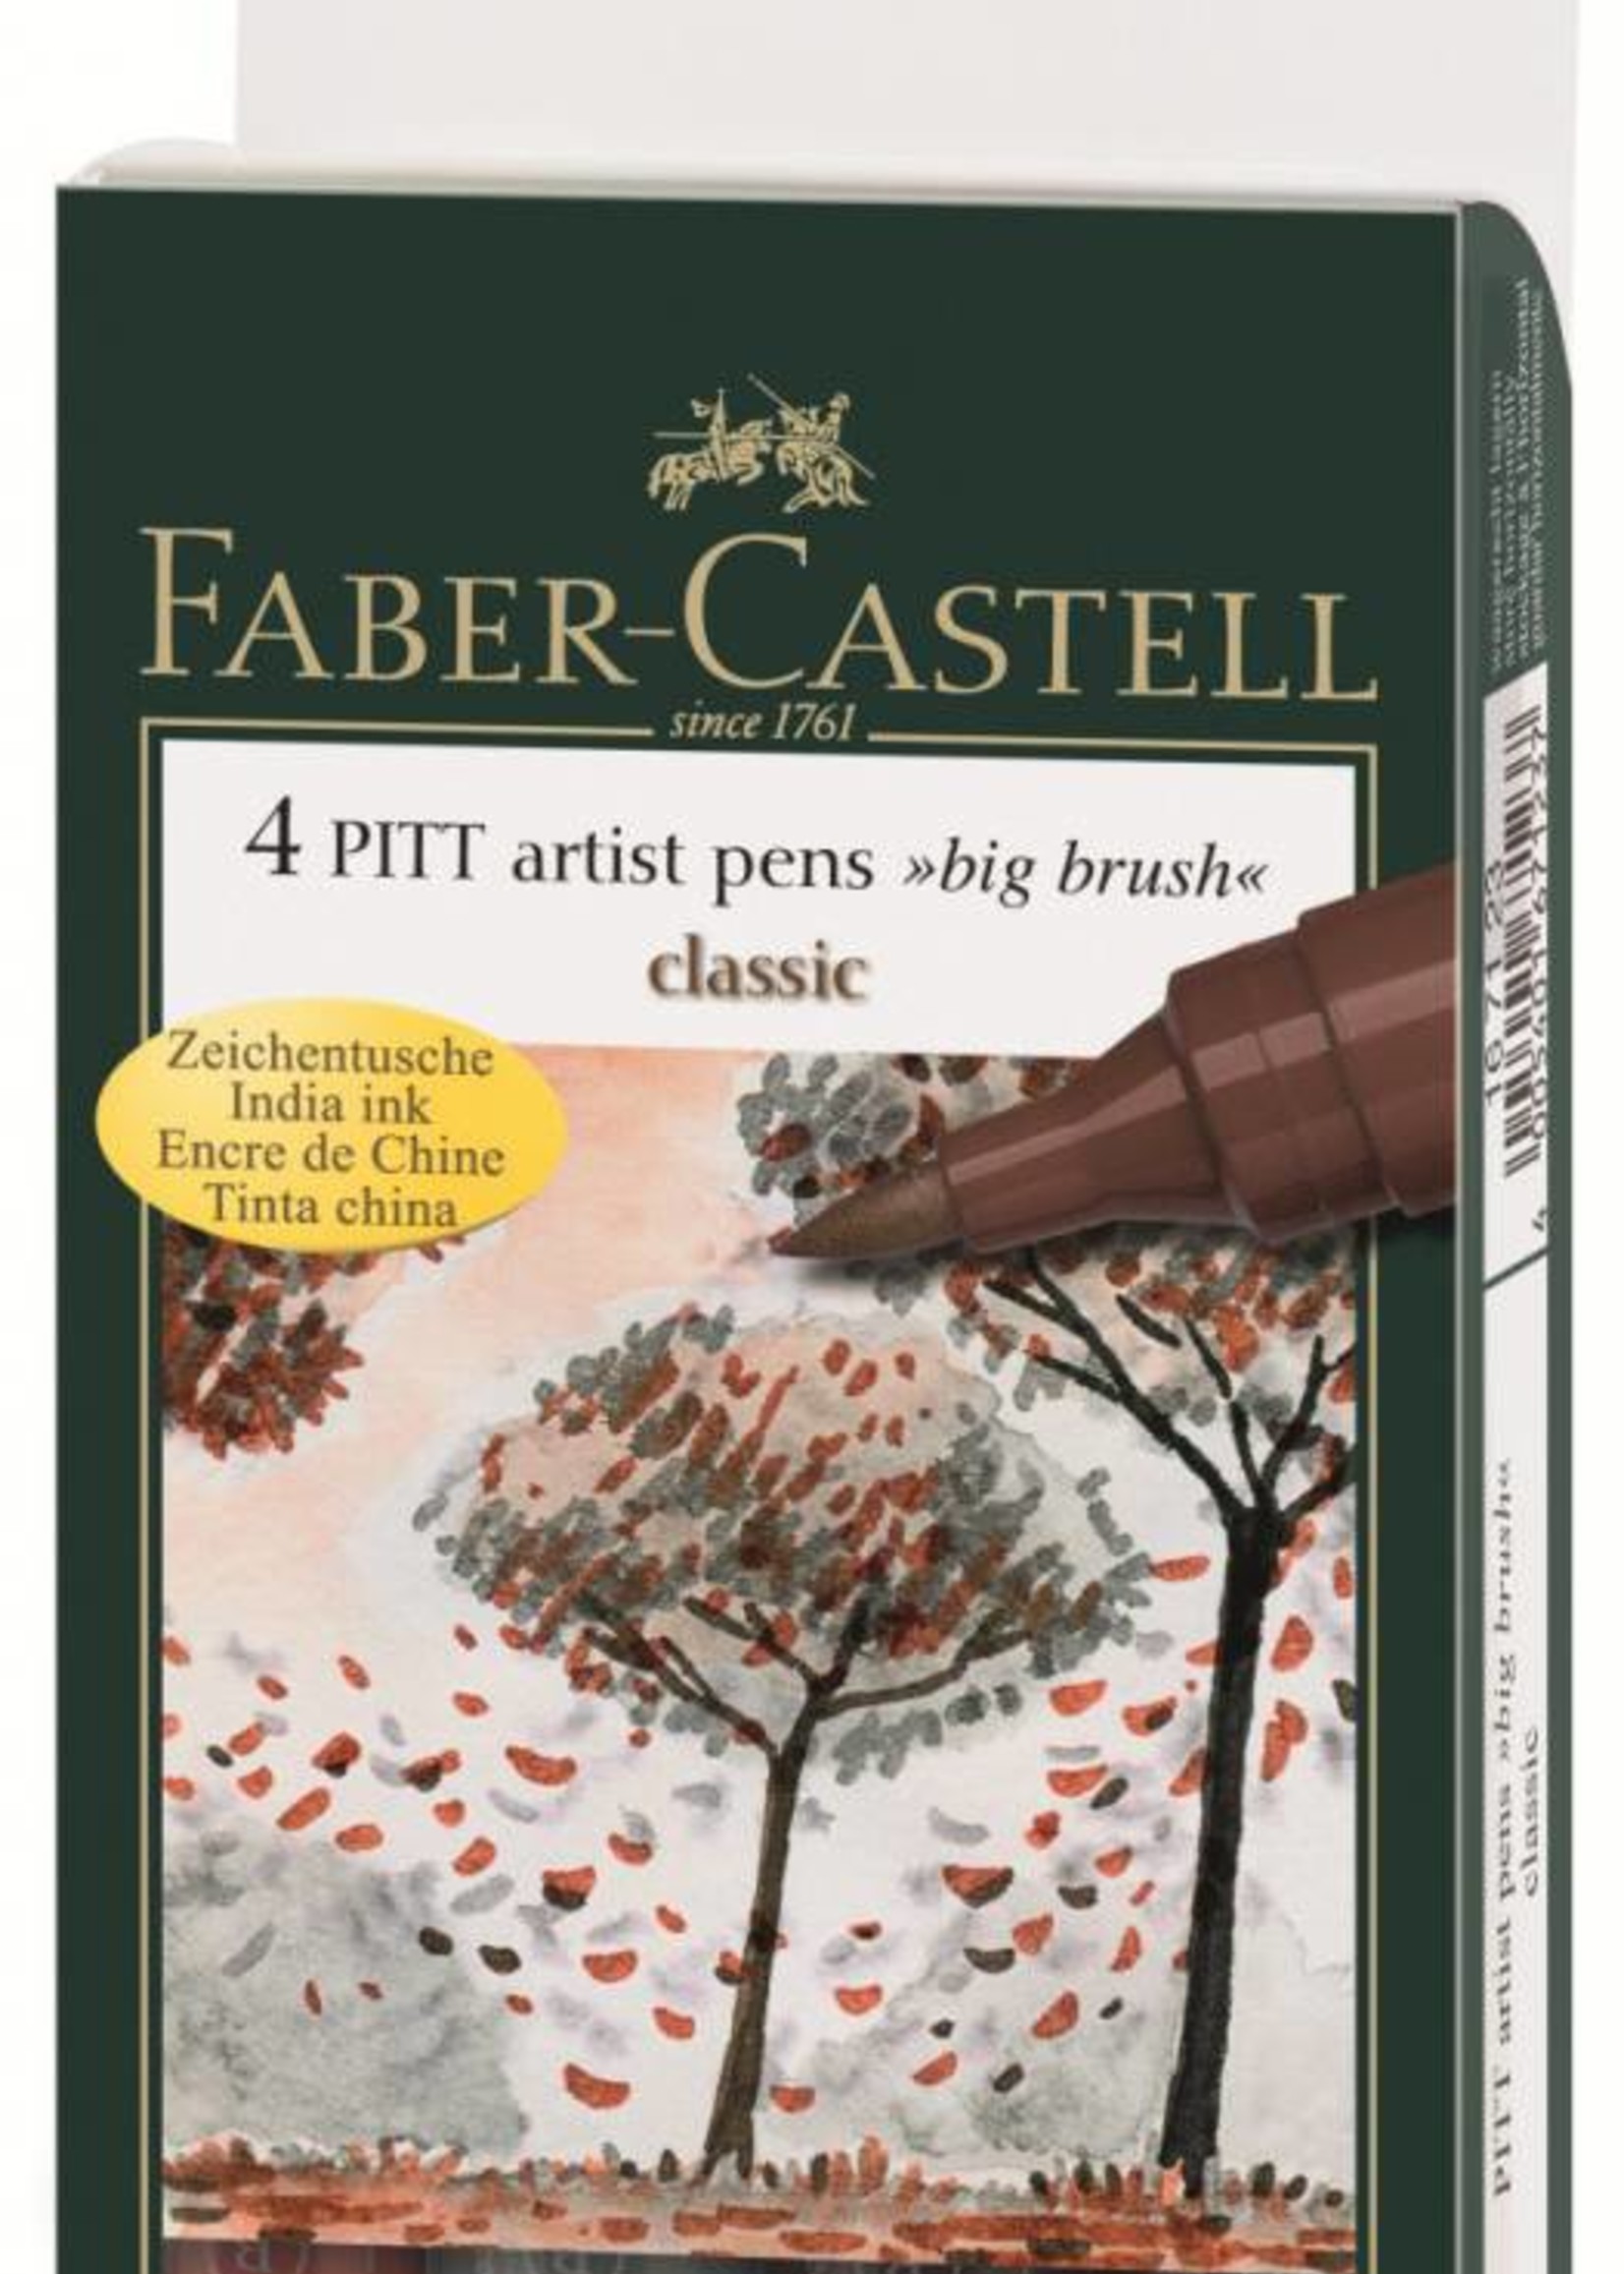 FABER CASTELL PITT ARTIST PEN BIG BRUSH SET/4 CLASSIC